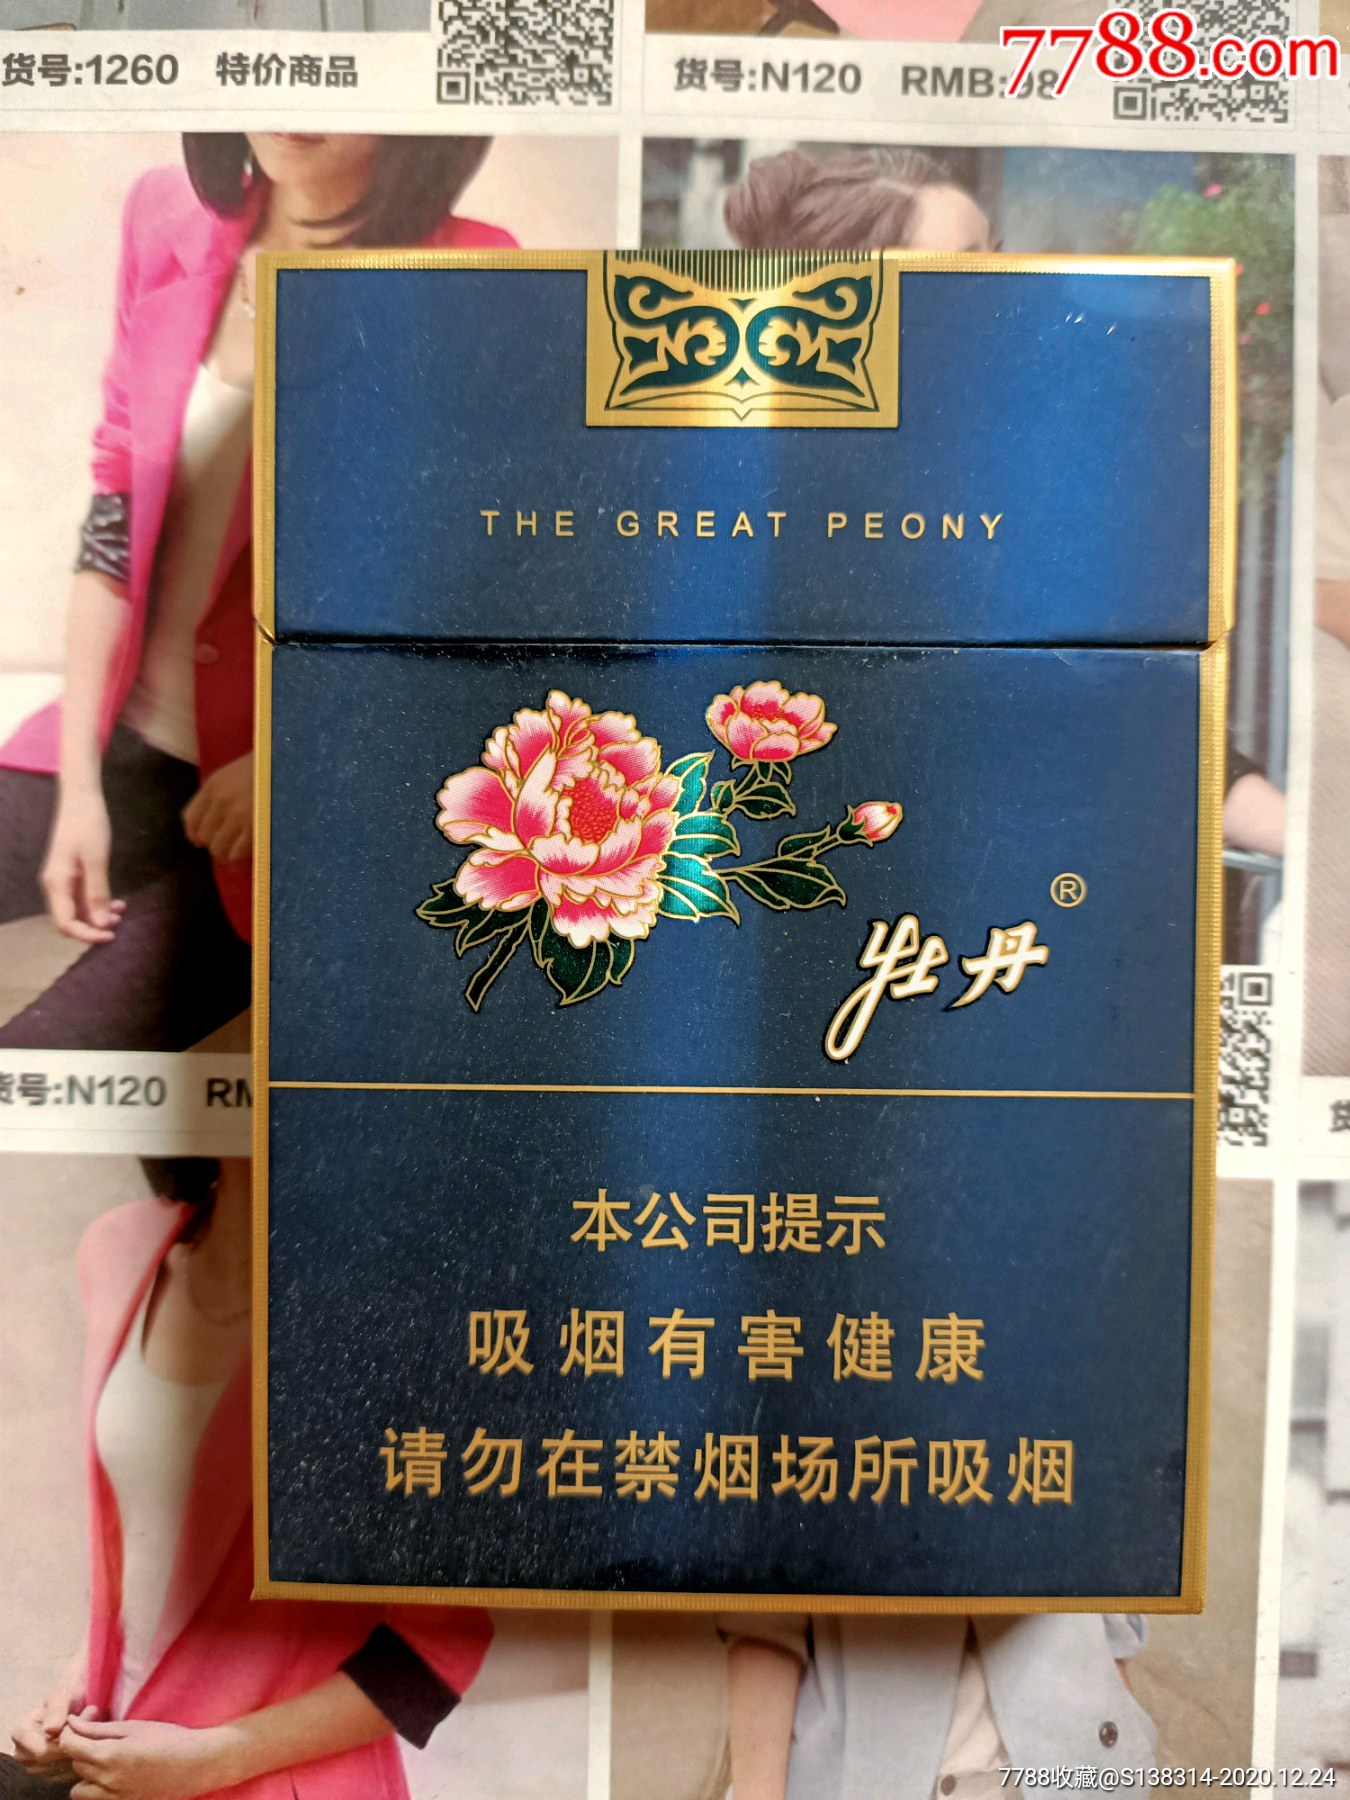 上海牡丹中支(16版劝阻)-烟标/烟盒-7788烟标收藏